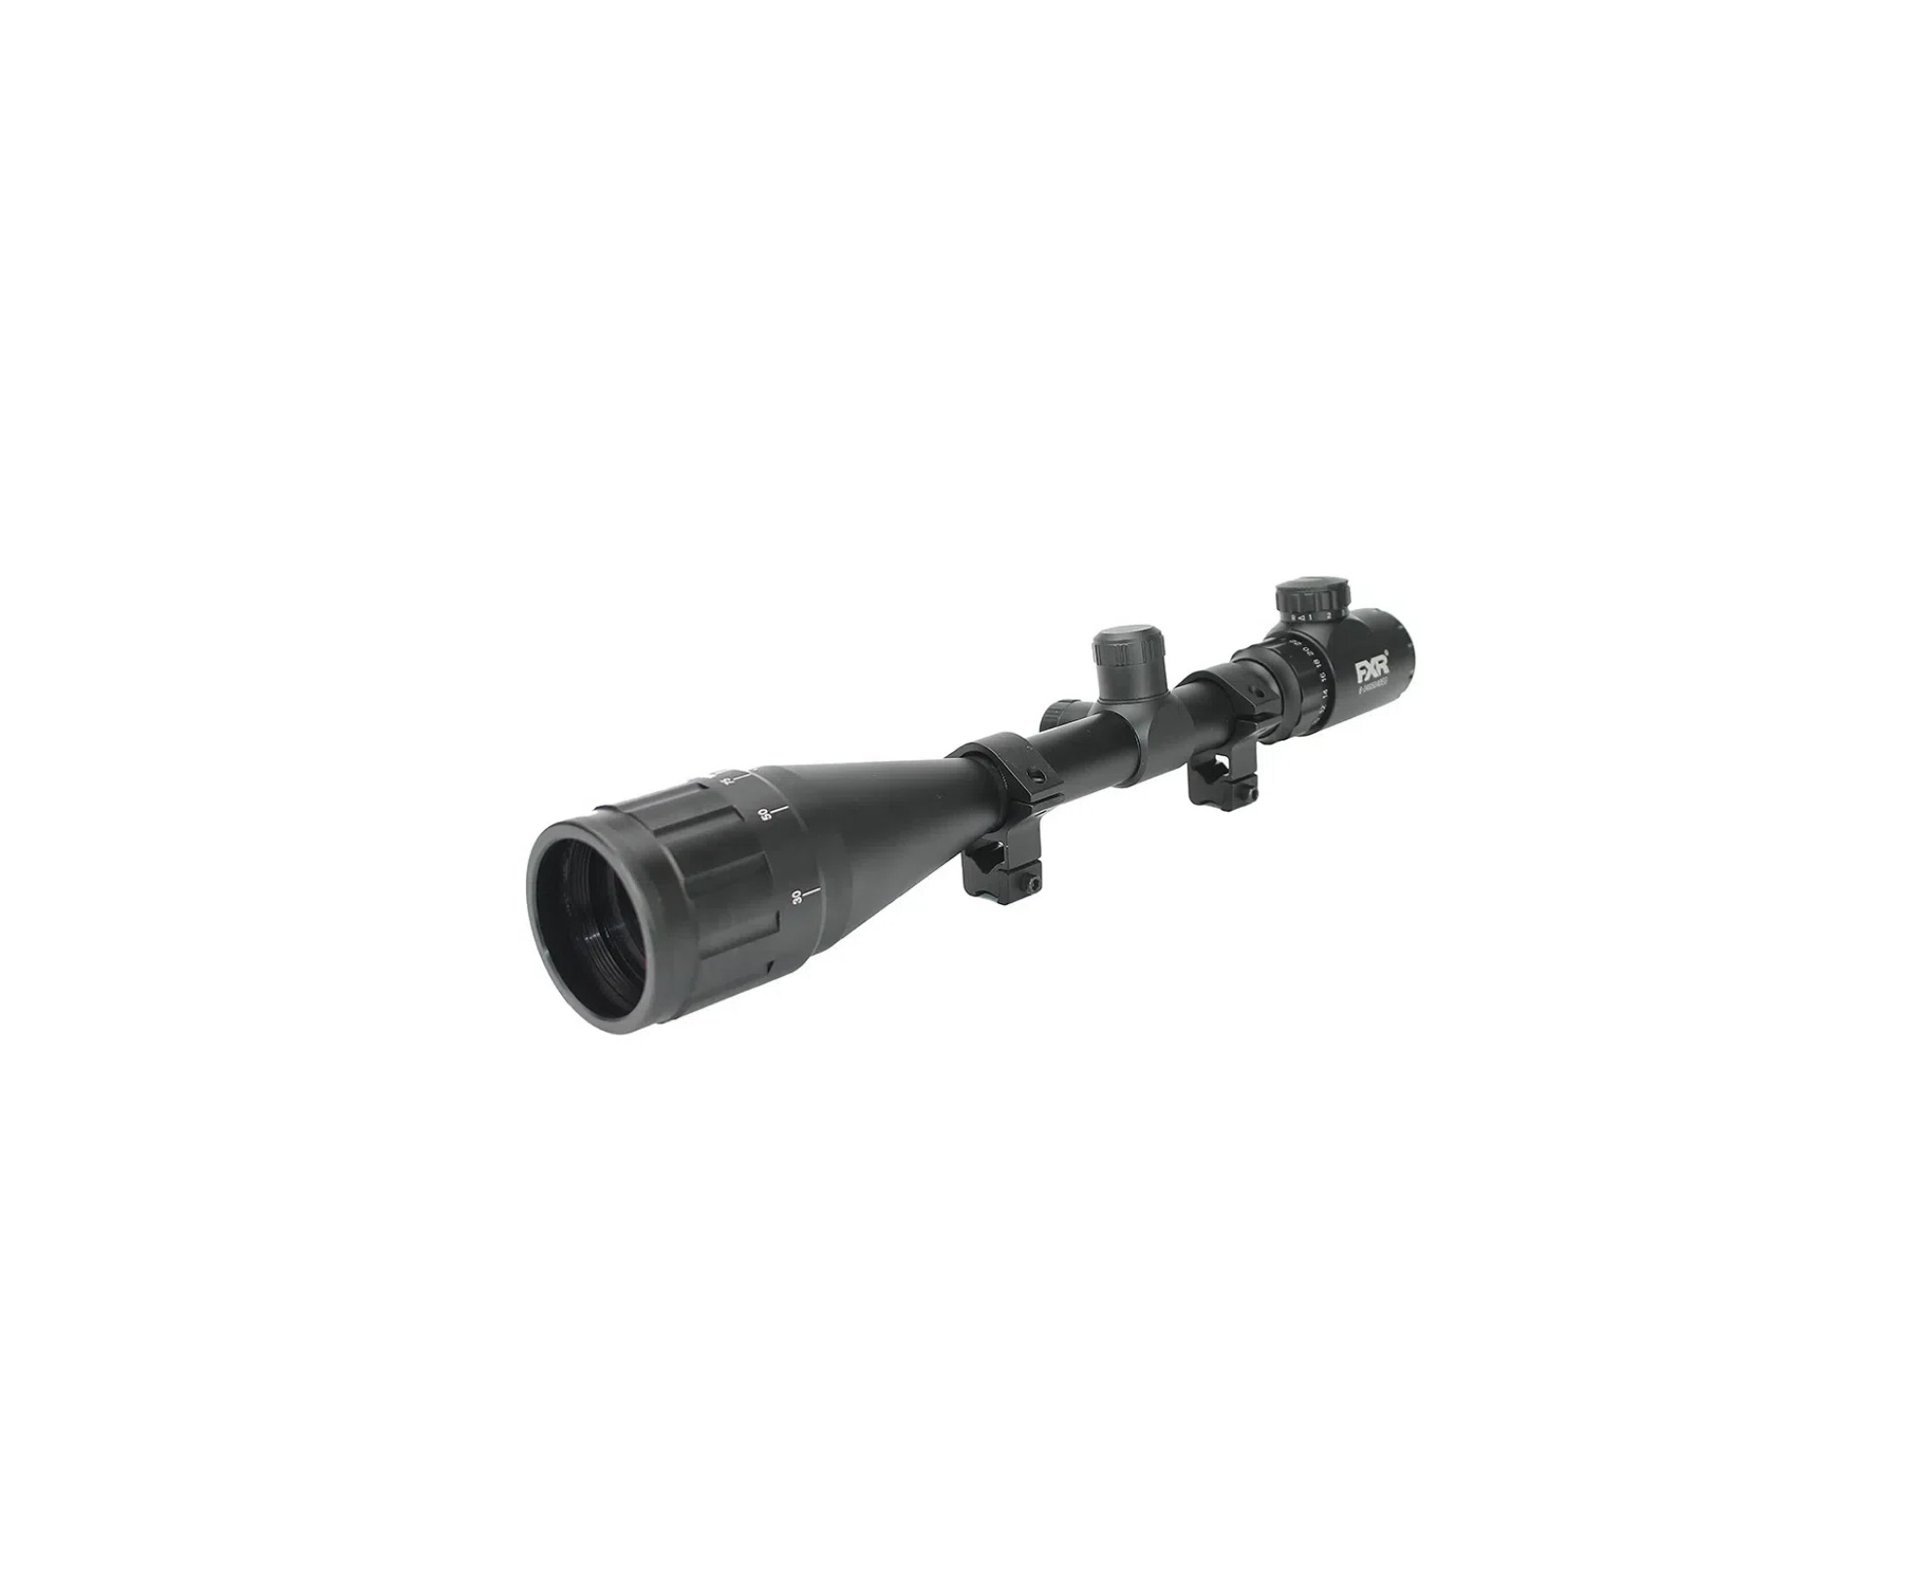 Carabina de Pressão PCP Alpha 6.35mm Camu Regulagem Potencia - Nova Vista + Bomba + Luneta 6-24x50